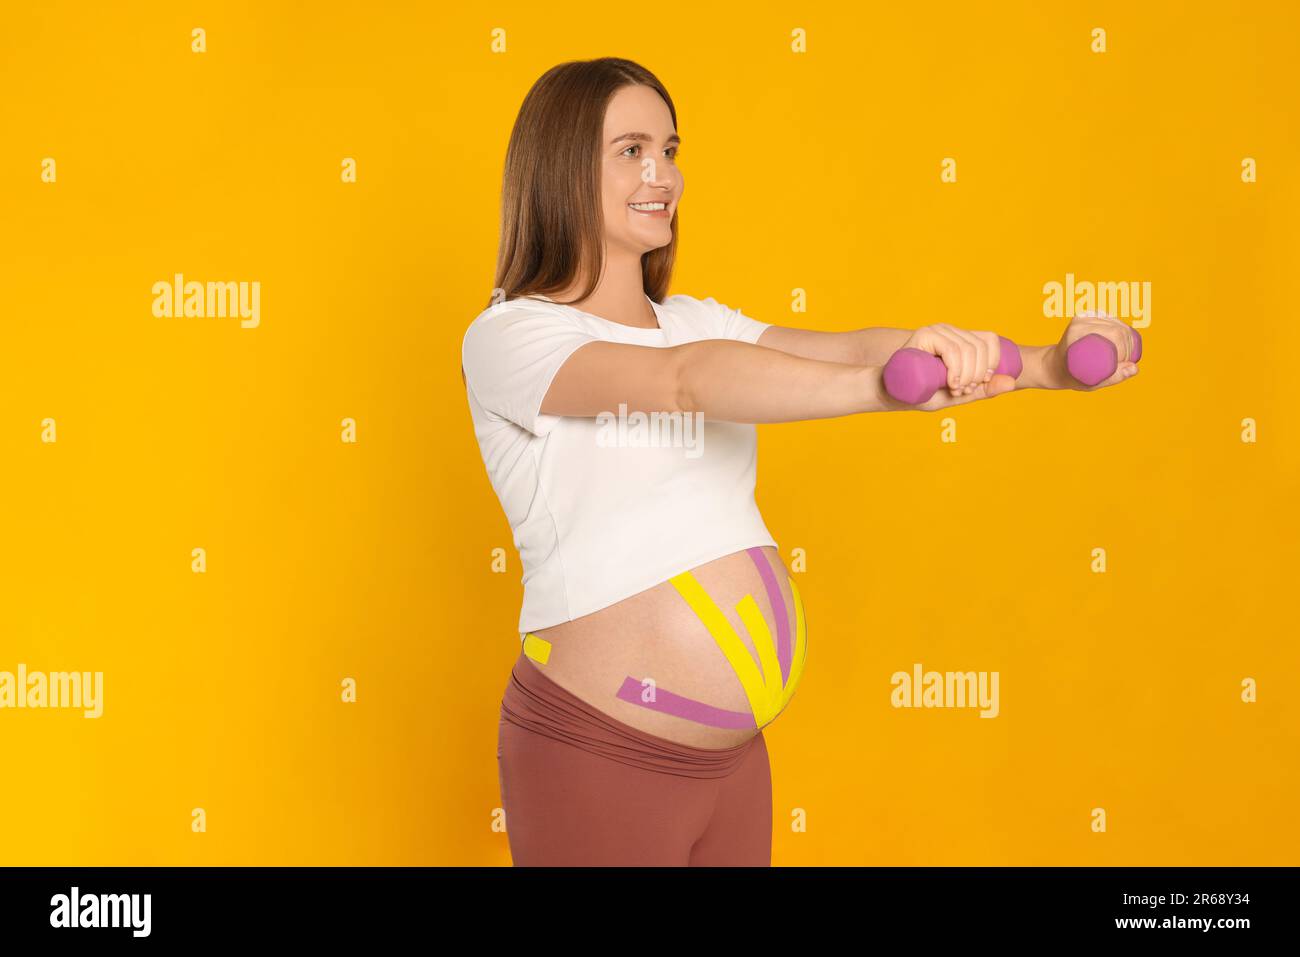 Mujer embarazada con cintas de kinesio en su vientre haciendo ejercicios contra fondo naranja Foto de stock